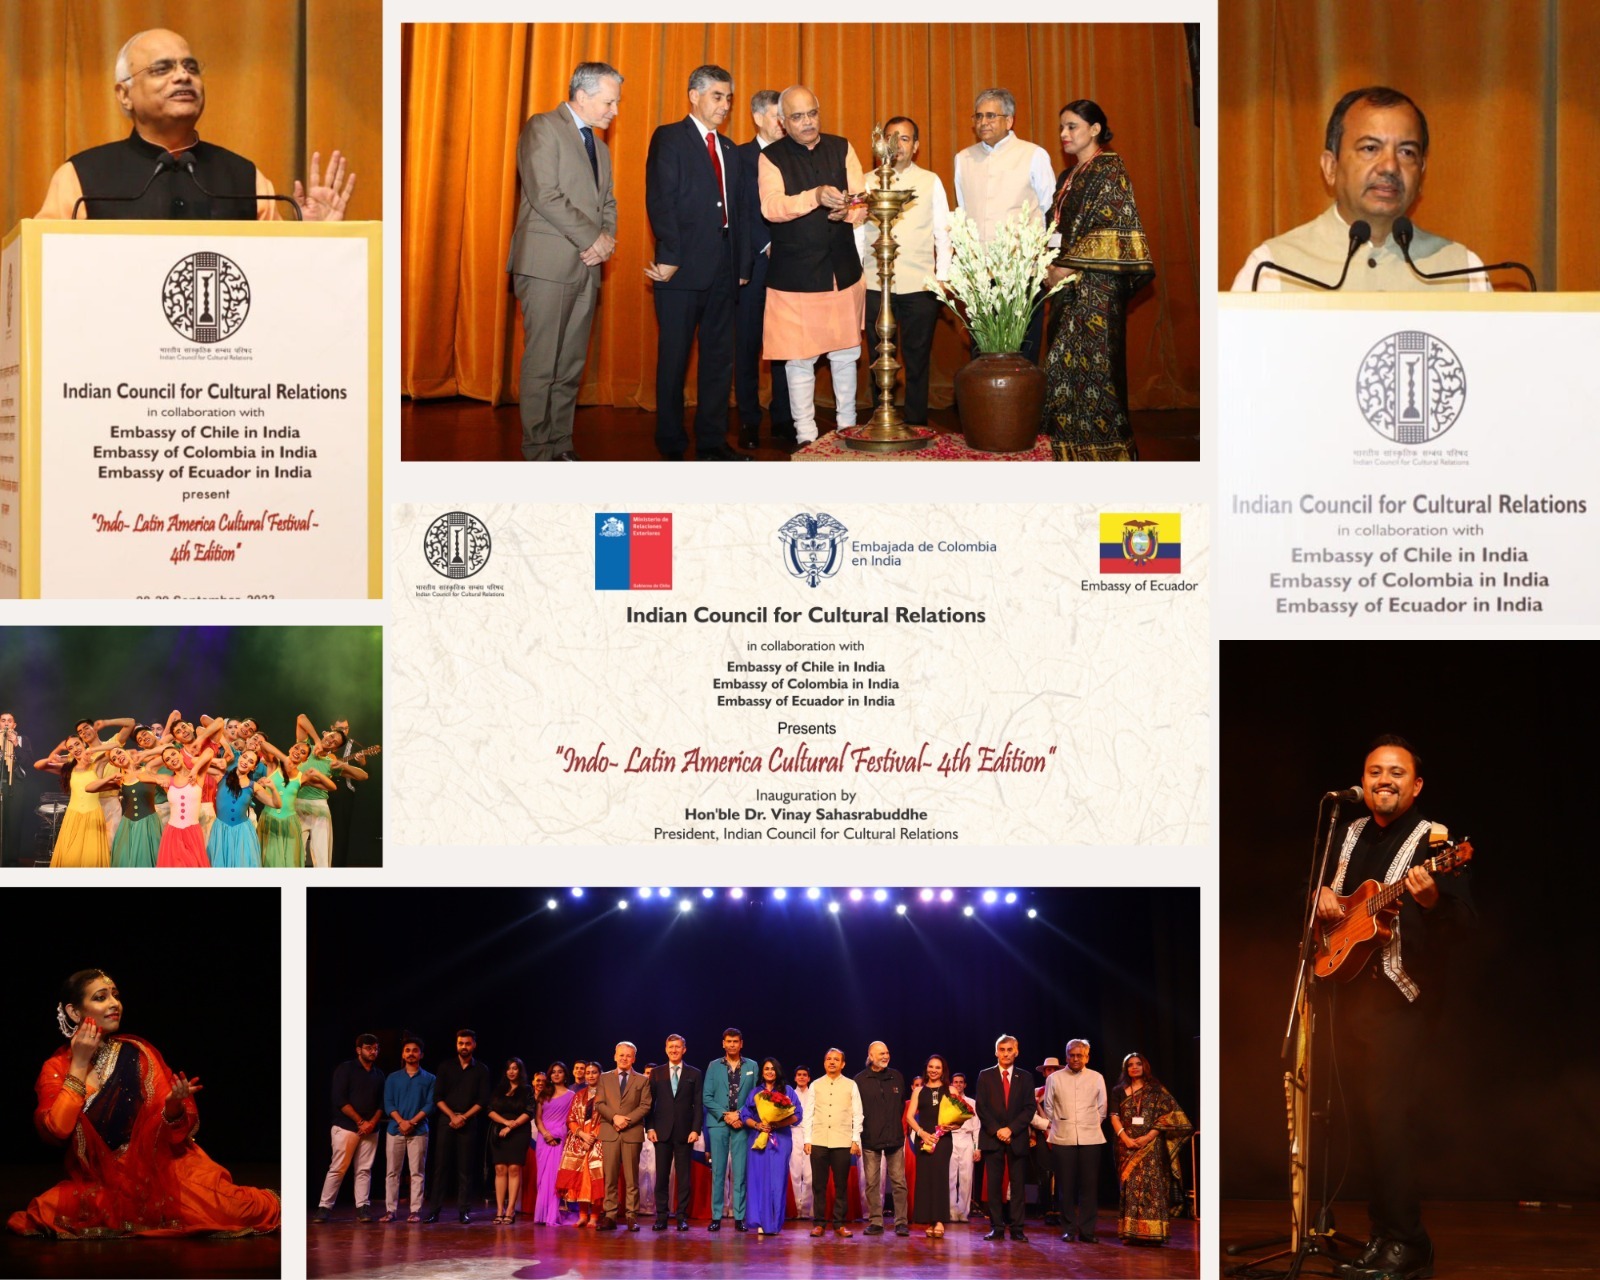 28 सितंबर 2023 को, ICCR के अध्यक्ष डॉ. विनय सहस्रबुद्धे, ICCR के महानिदेशक, श्री कुमार तुहिन ने नई दिल्ली में इक्वाडोर, कोलंबिया और चिली के मिशनों के प्रमुखों के साथ नई दिल्ली में 'चौथे इंडो-लैटिन अमेरिका सांस्कृतिक महोत्सव' का उद्घाटन किया।